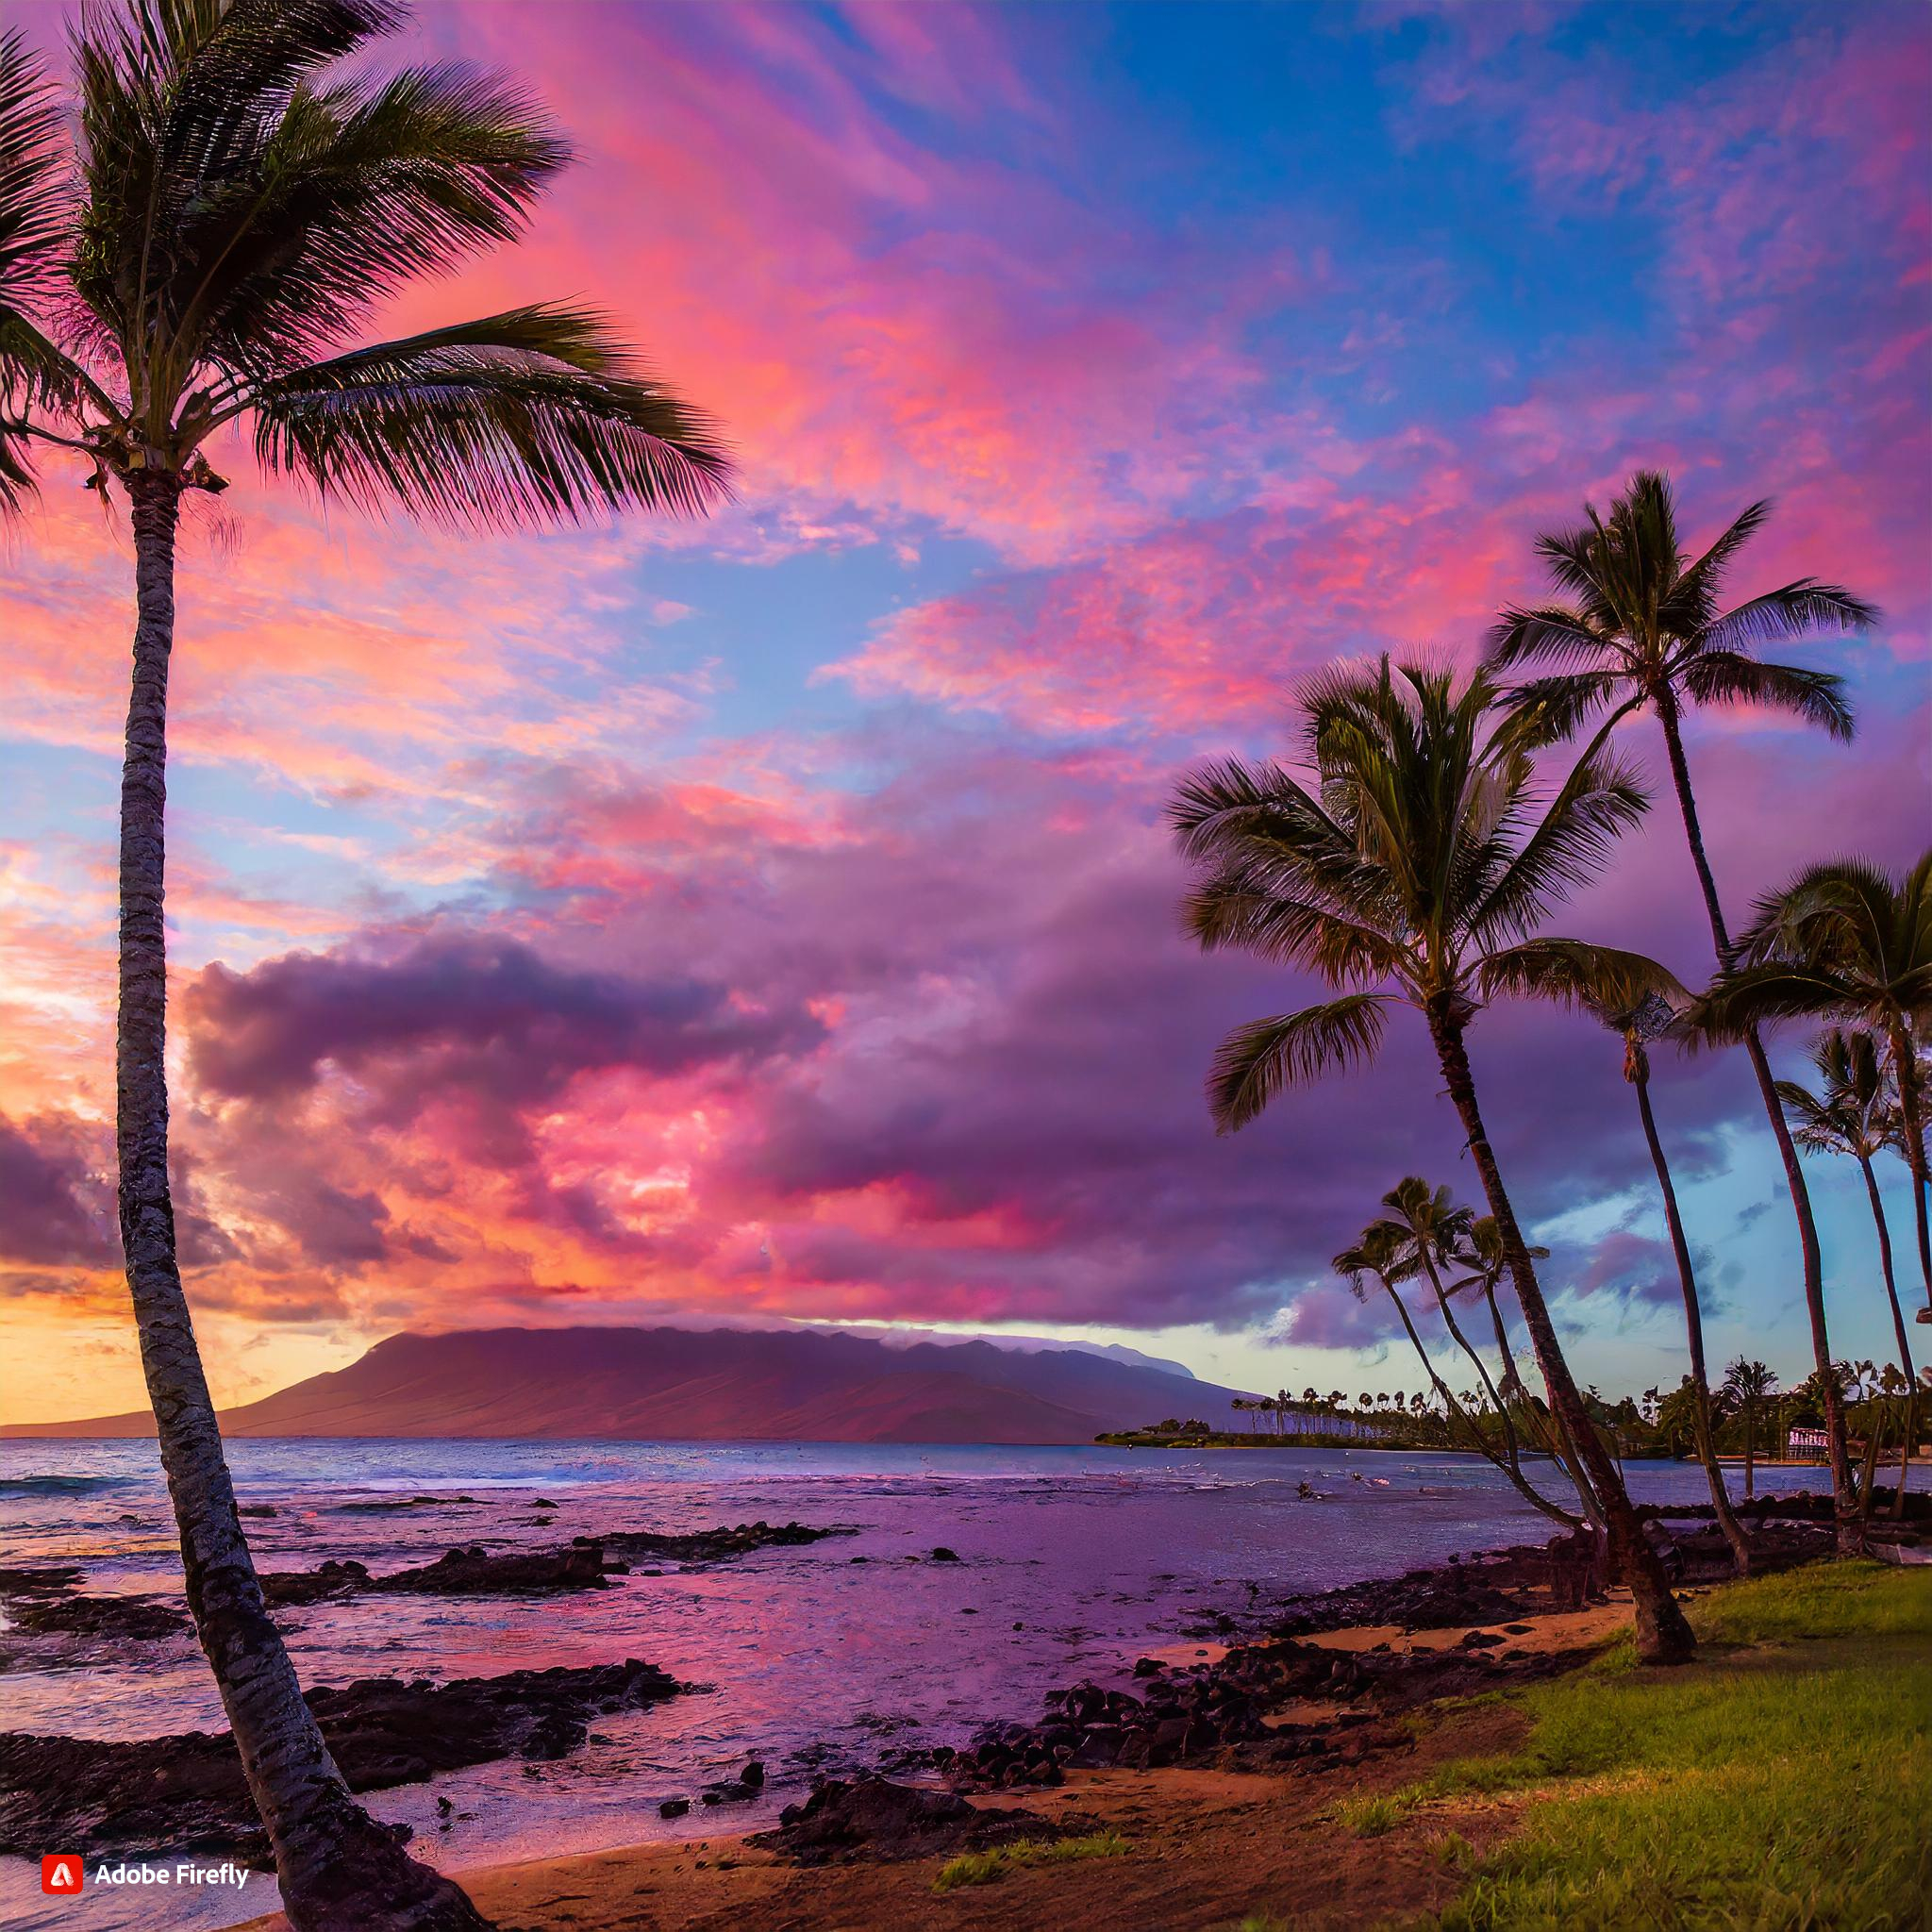 Hawaii during sunset